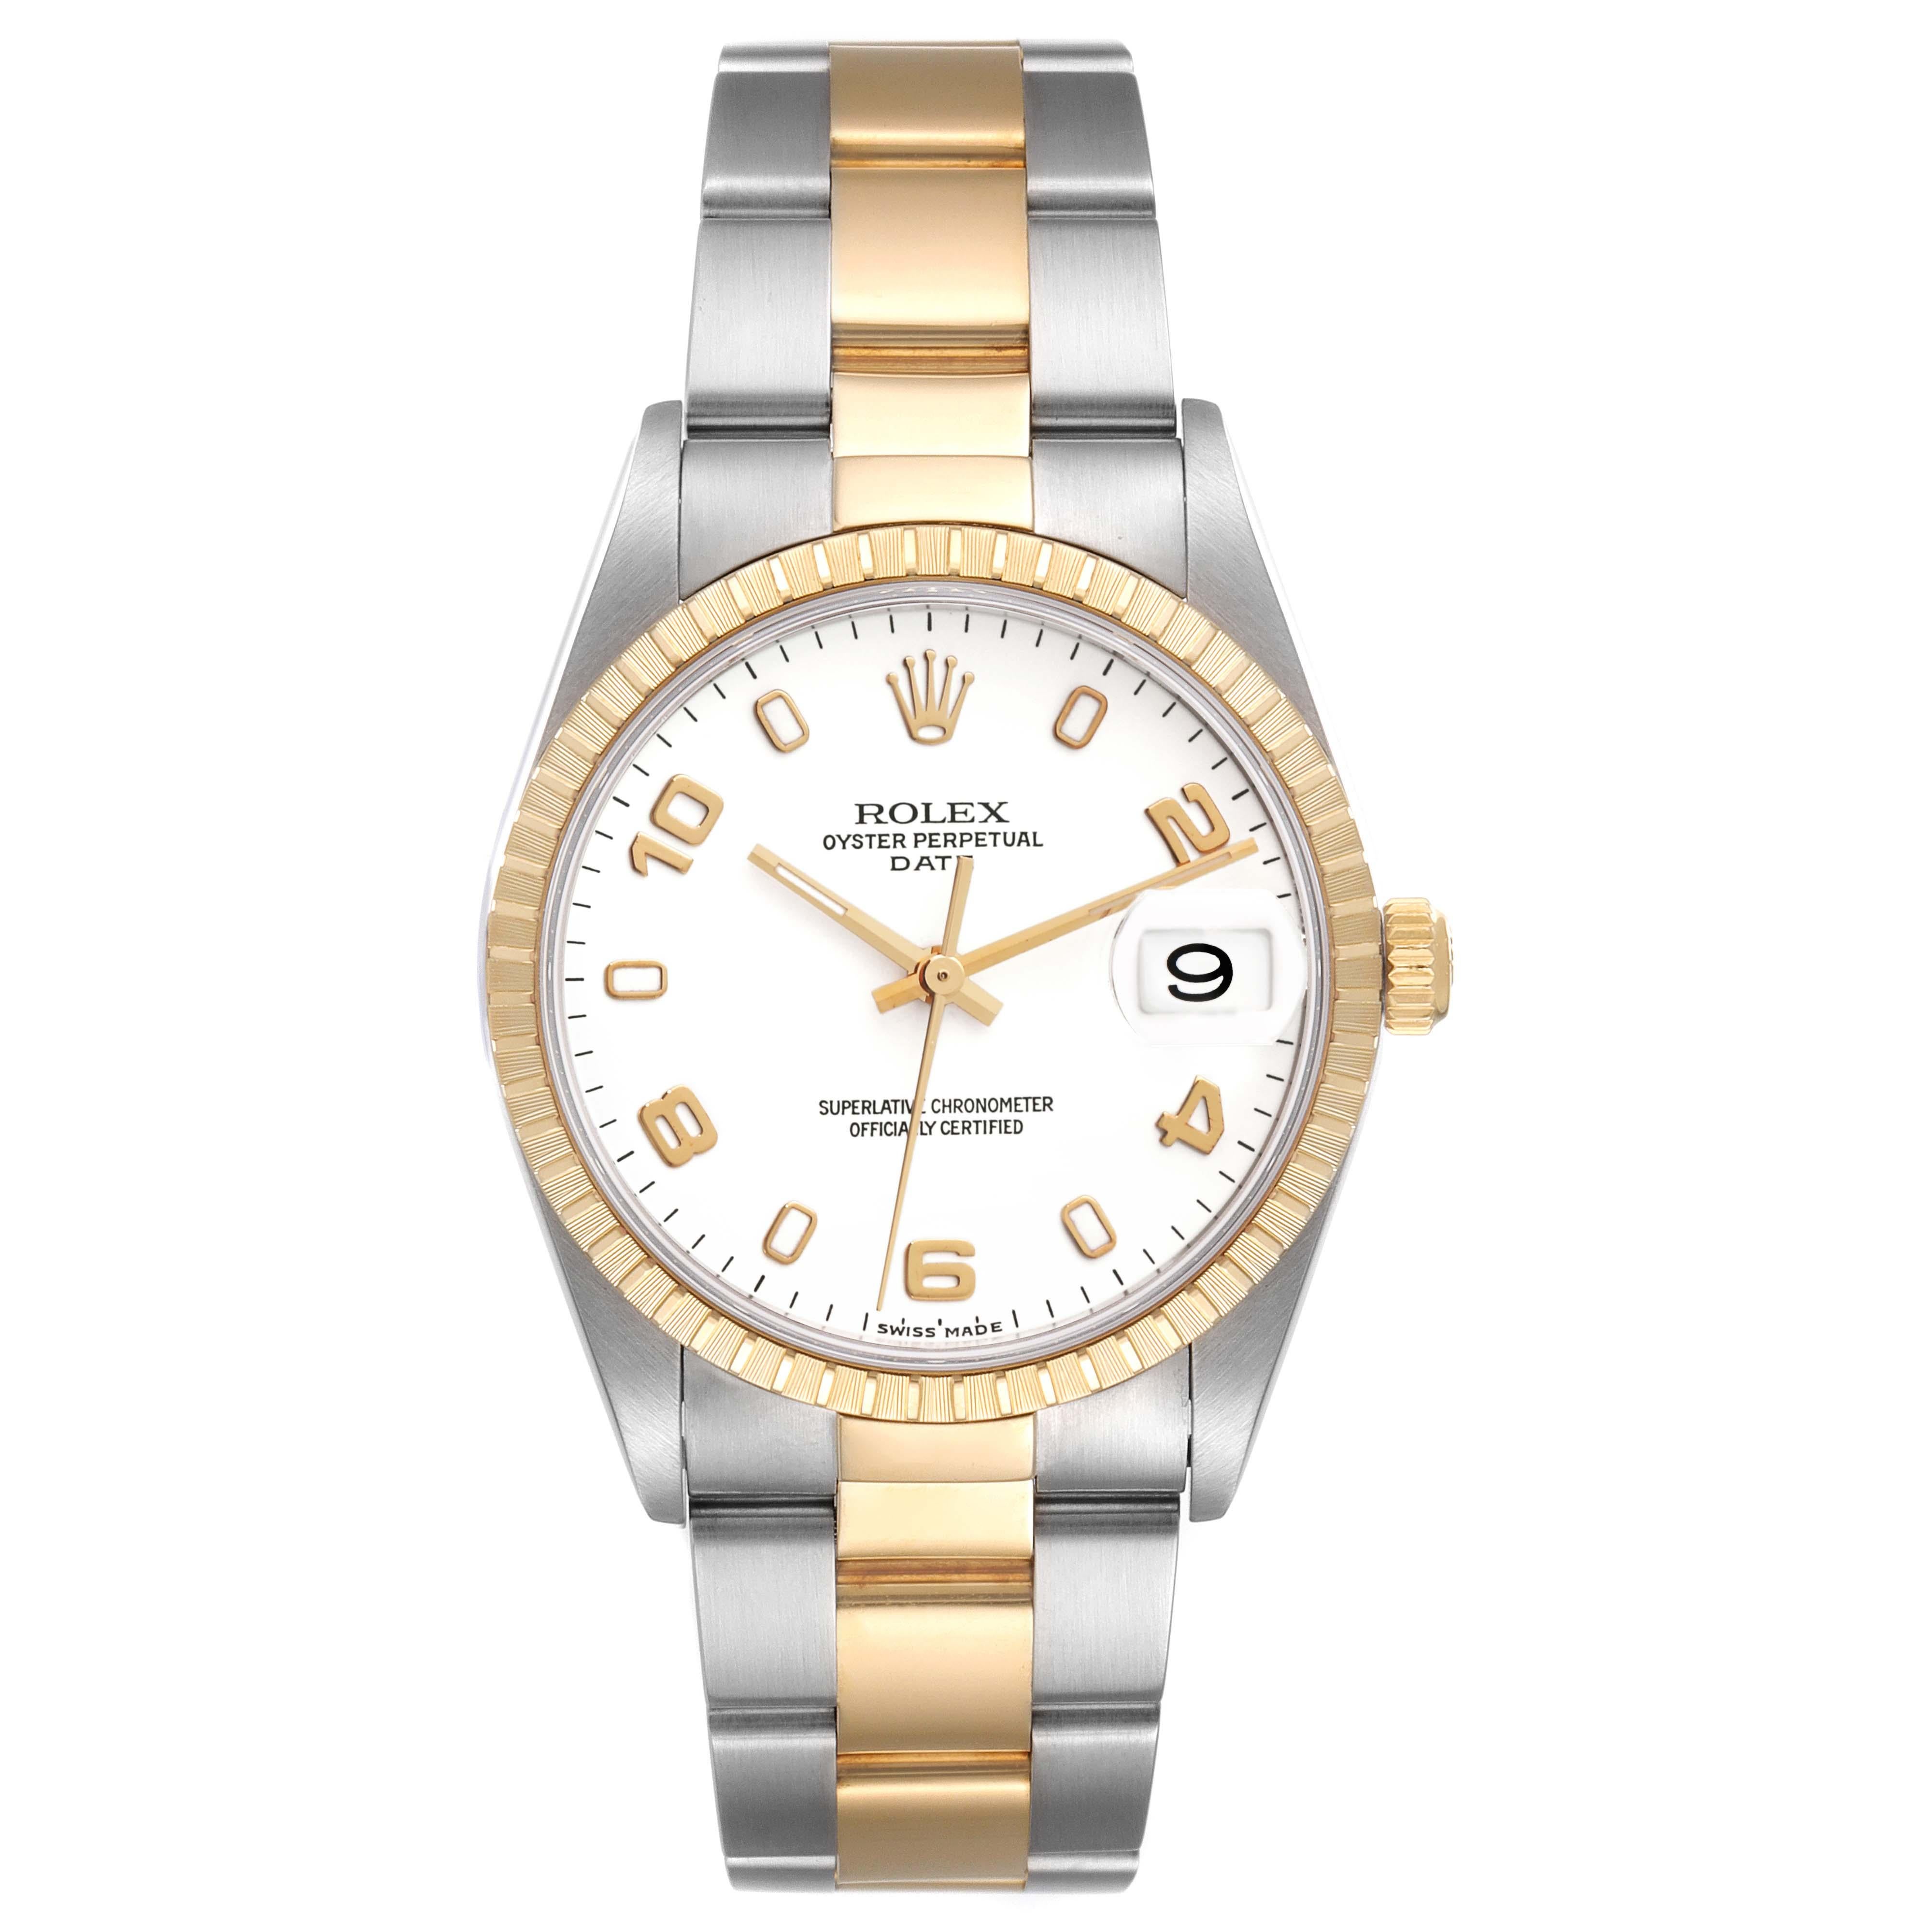 Rolex Date Steel Yellow Gold White Dial Mens Watch 15223. Mouvement à remontage automatique certifié officiellement chronomètre avec fonction de date rapide. Boîtier oyster en acier inoxydable et or jaune 18K de 34,0 mm de diamètre. Logo Rolex sur